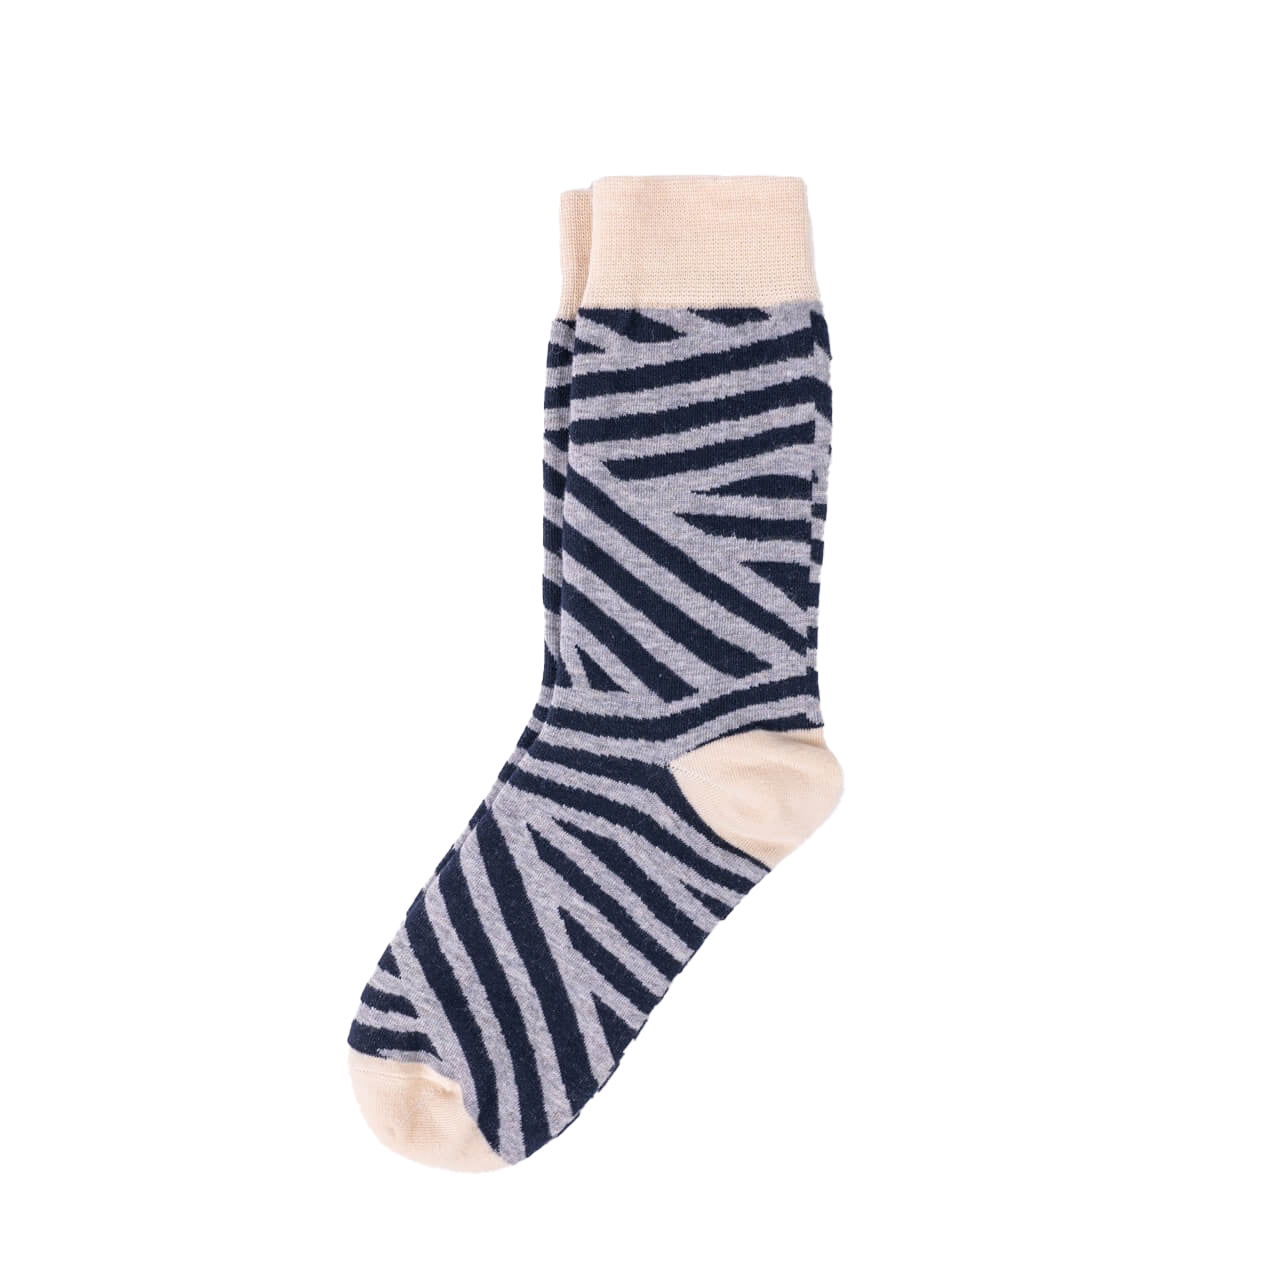 Zebra Stripe Patterned Fun Dress Socks